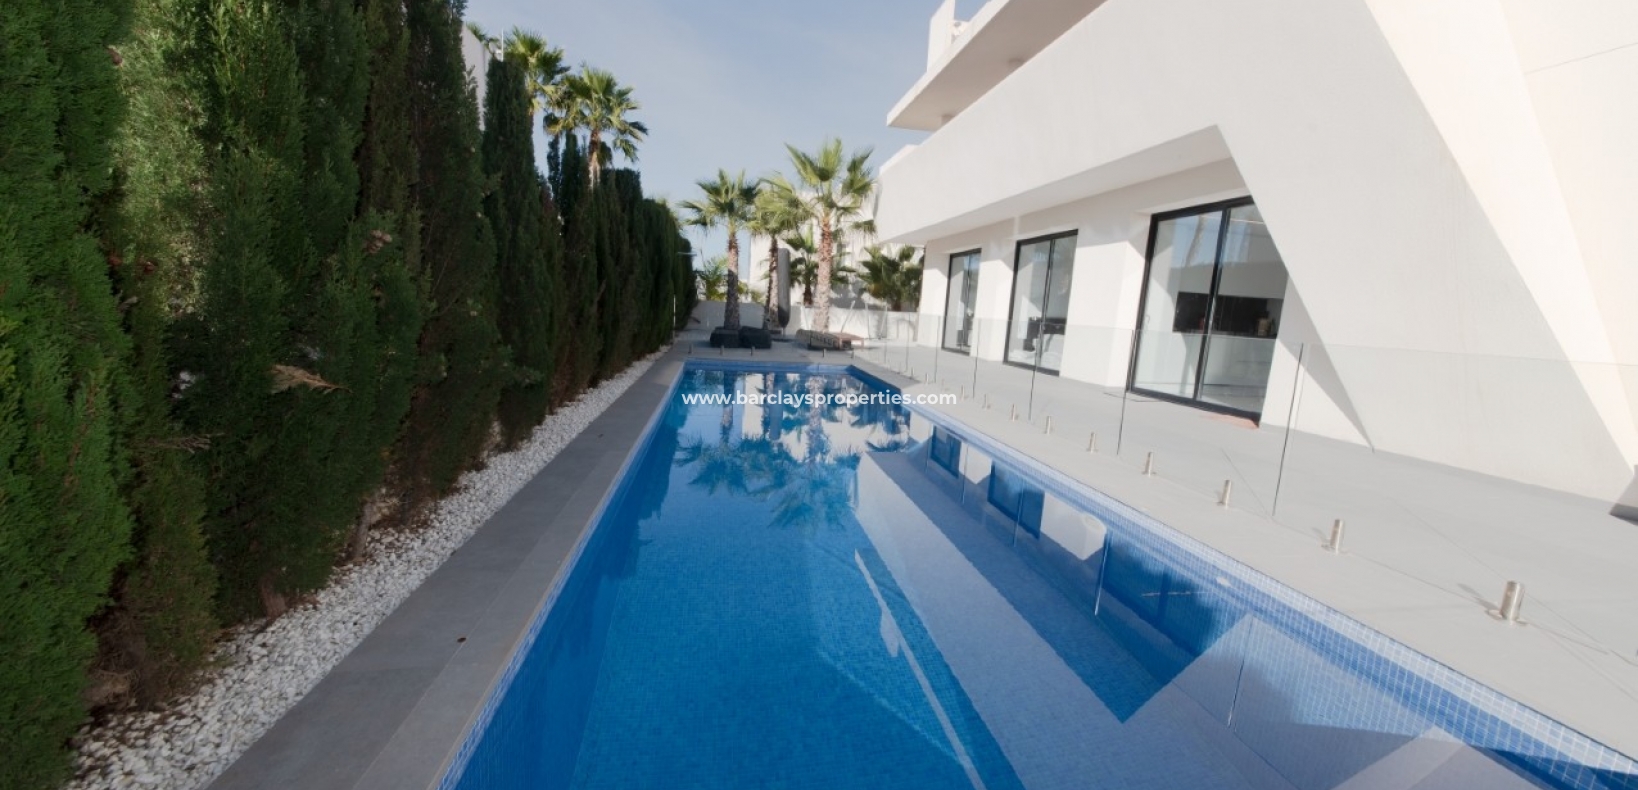 Zwembad - Nieuwbouw villa te koop in Urb La Marina